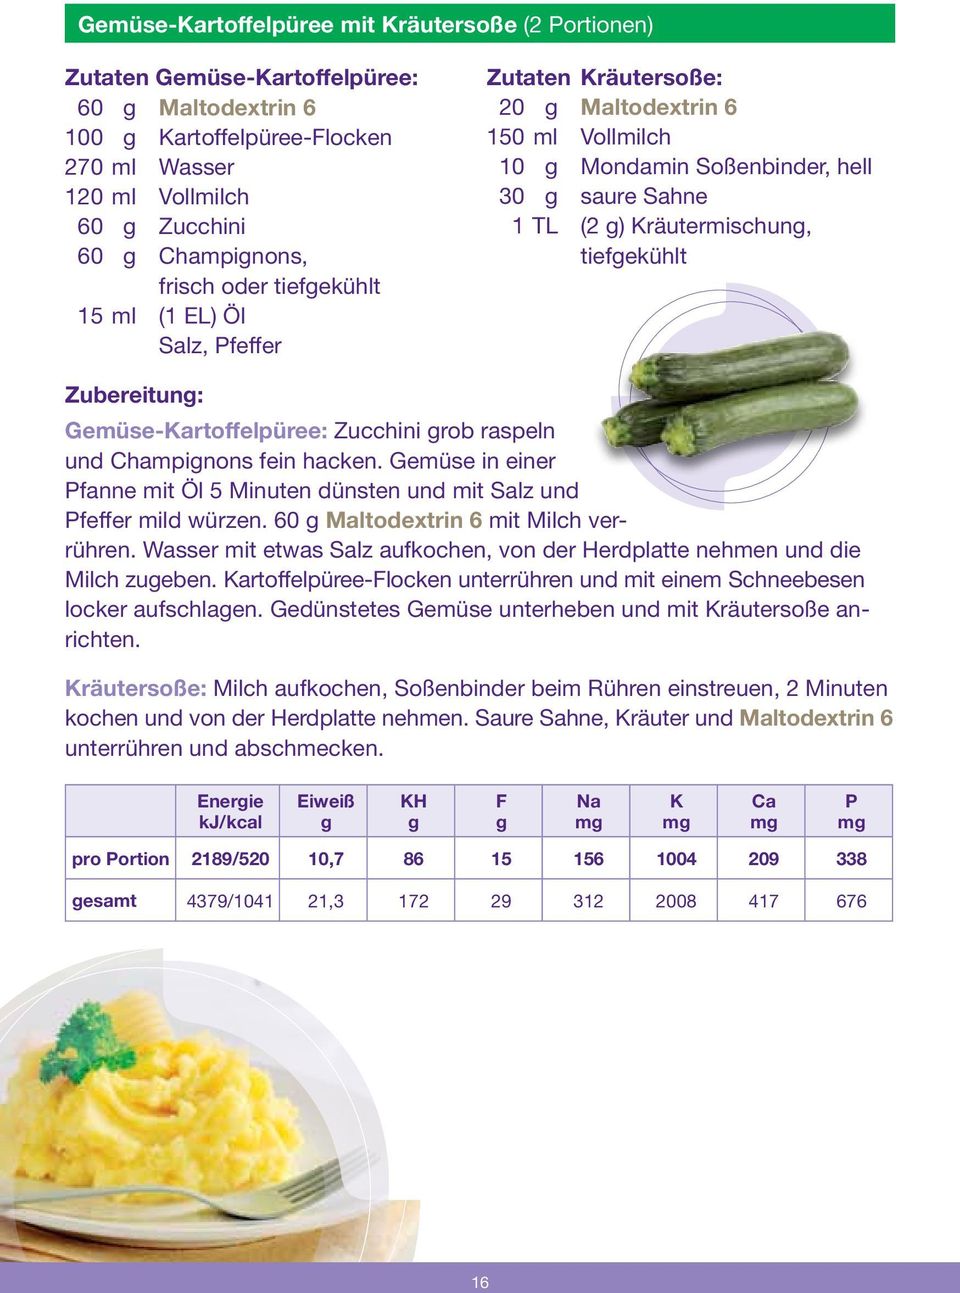 Gemüse-artoffelpüree: Zucchini rob raspeln und Champinons fein hacken. Gemüse in einer fanne mit Öl 5 Minuten dünsten und mit Salz und feffer mild würzen. 60 Maltodextrin 6 mit Milch verrühren.